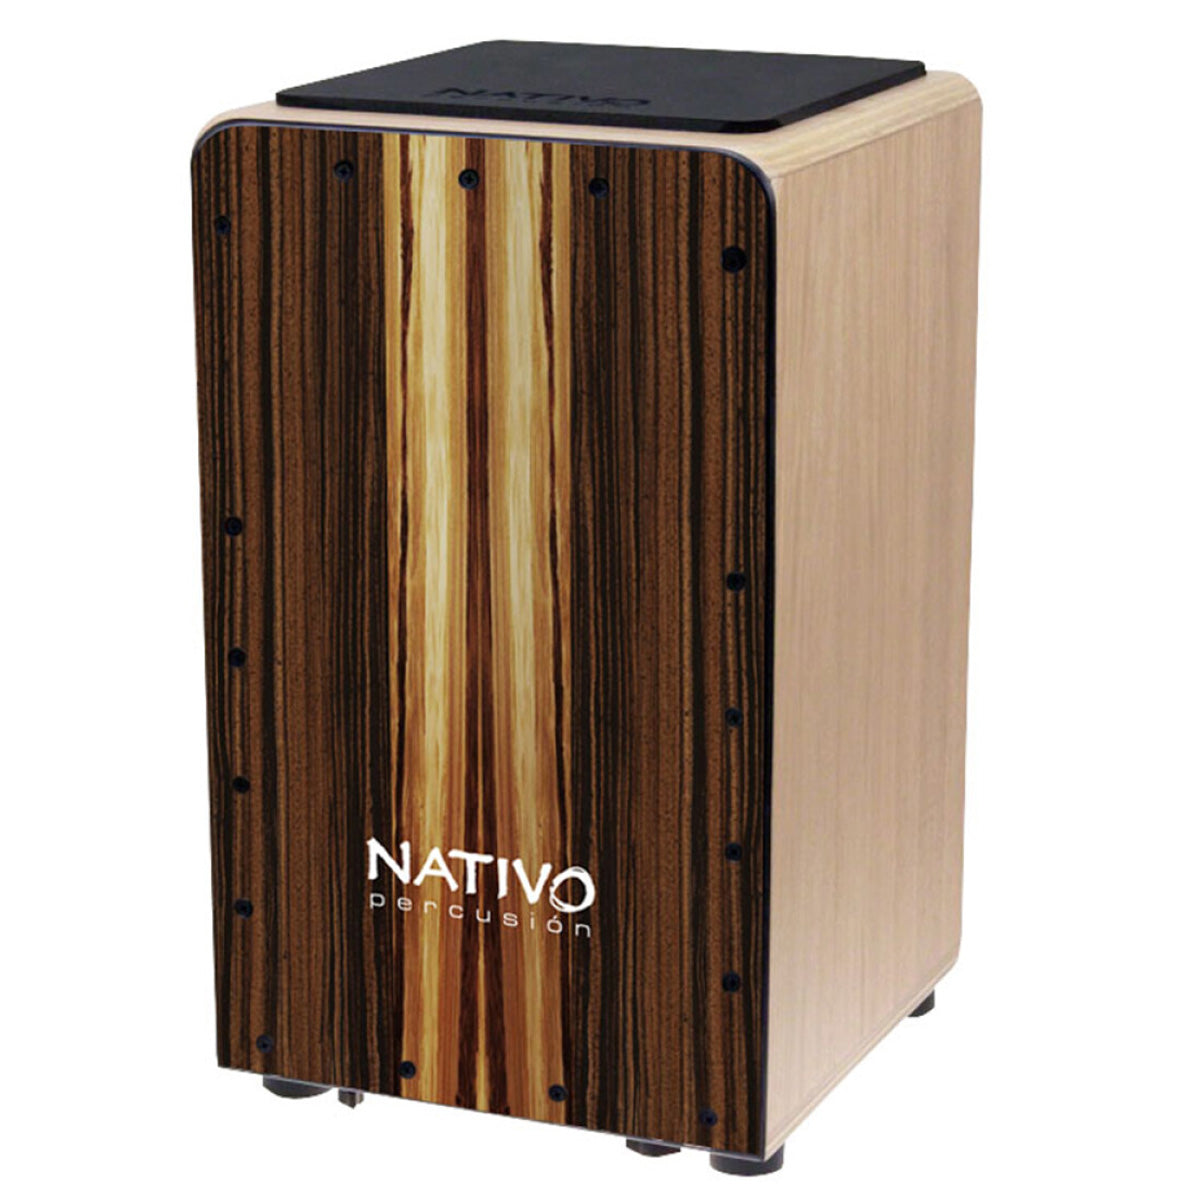 Nativo Studio Series Cajon with Macchiato Frontplate